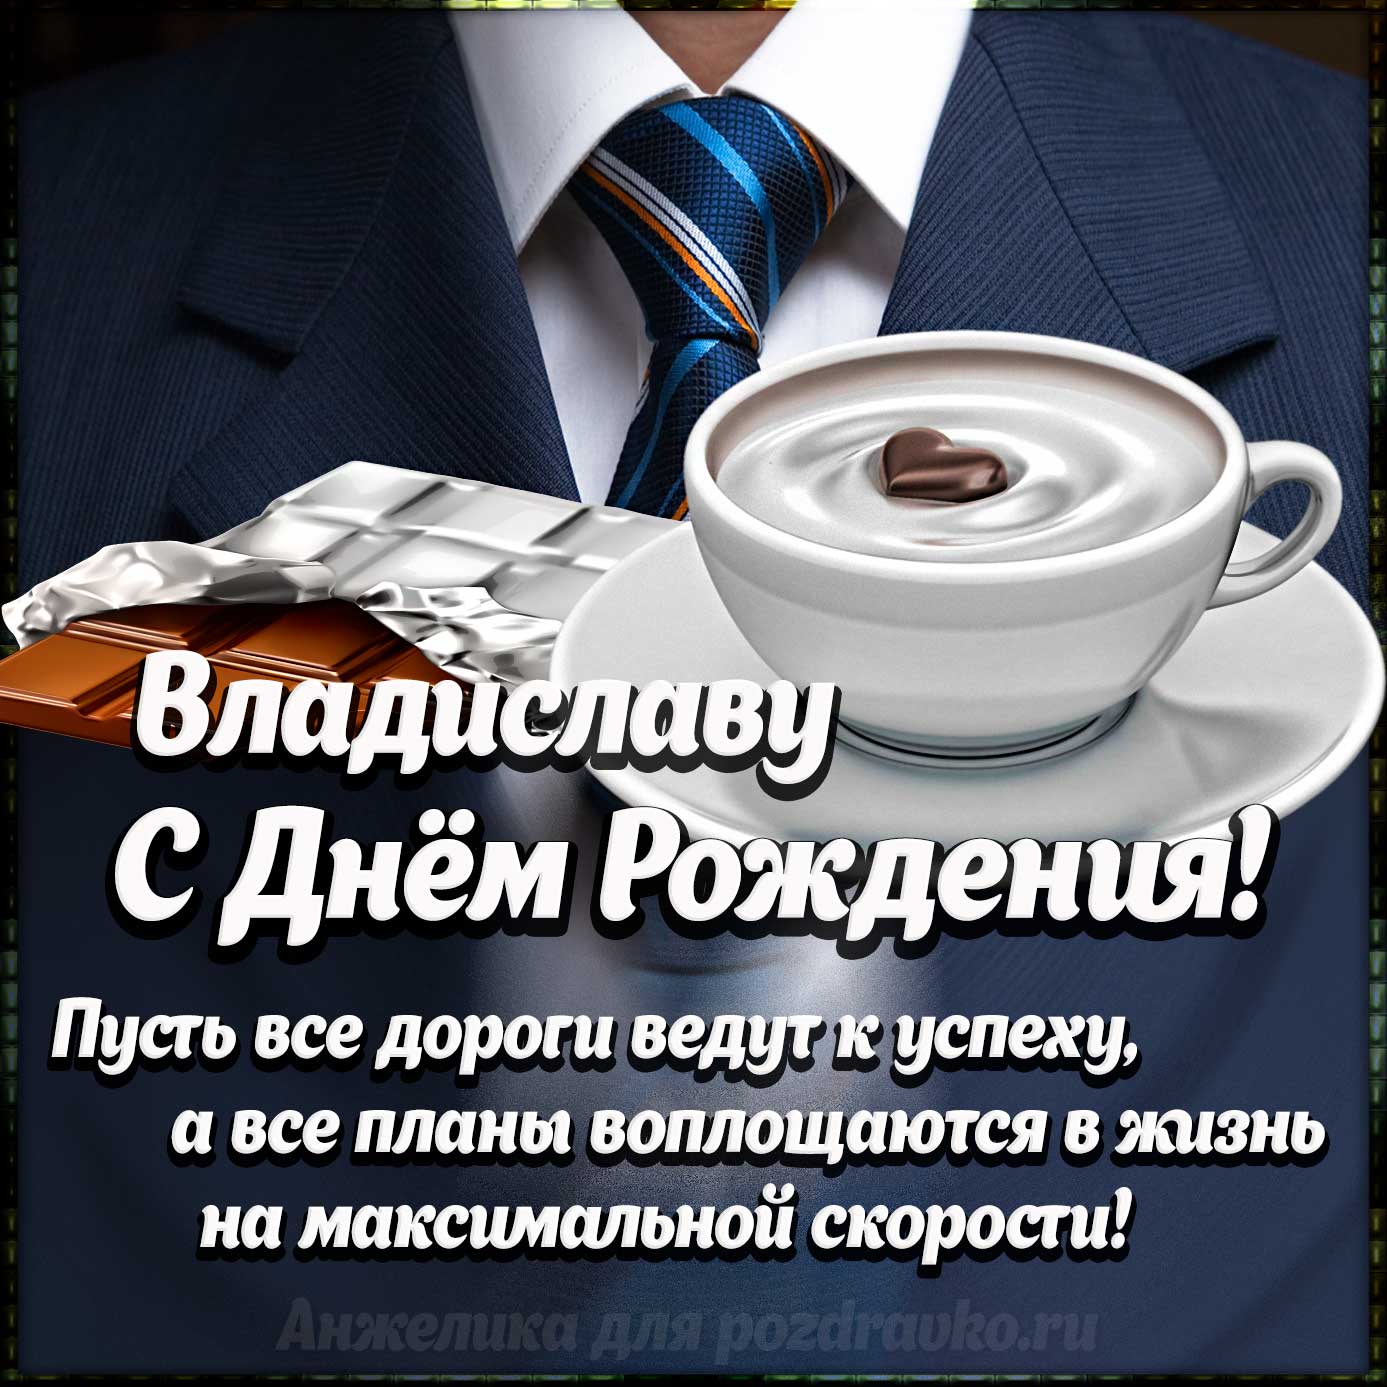 Открытка - Владиславу с Днем Рождения с галстуком, кофе и пожеланием. Скачать бесплатно или отправить картинку.